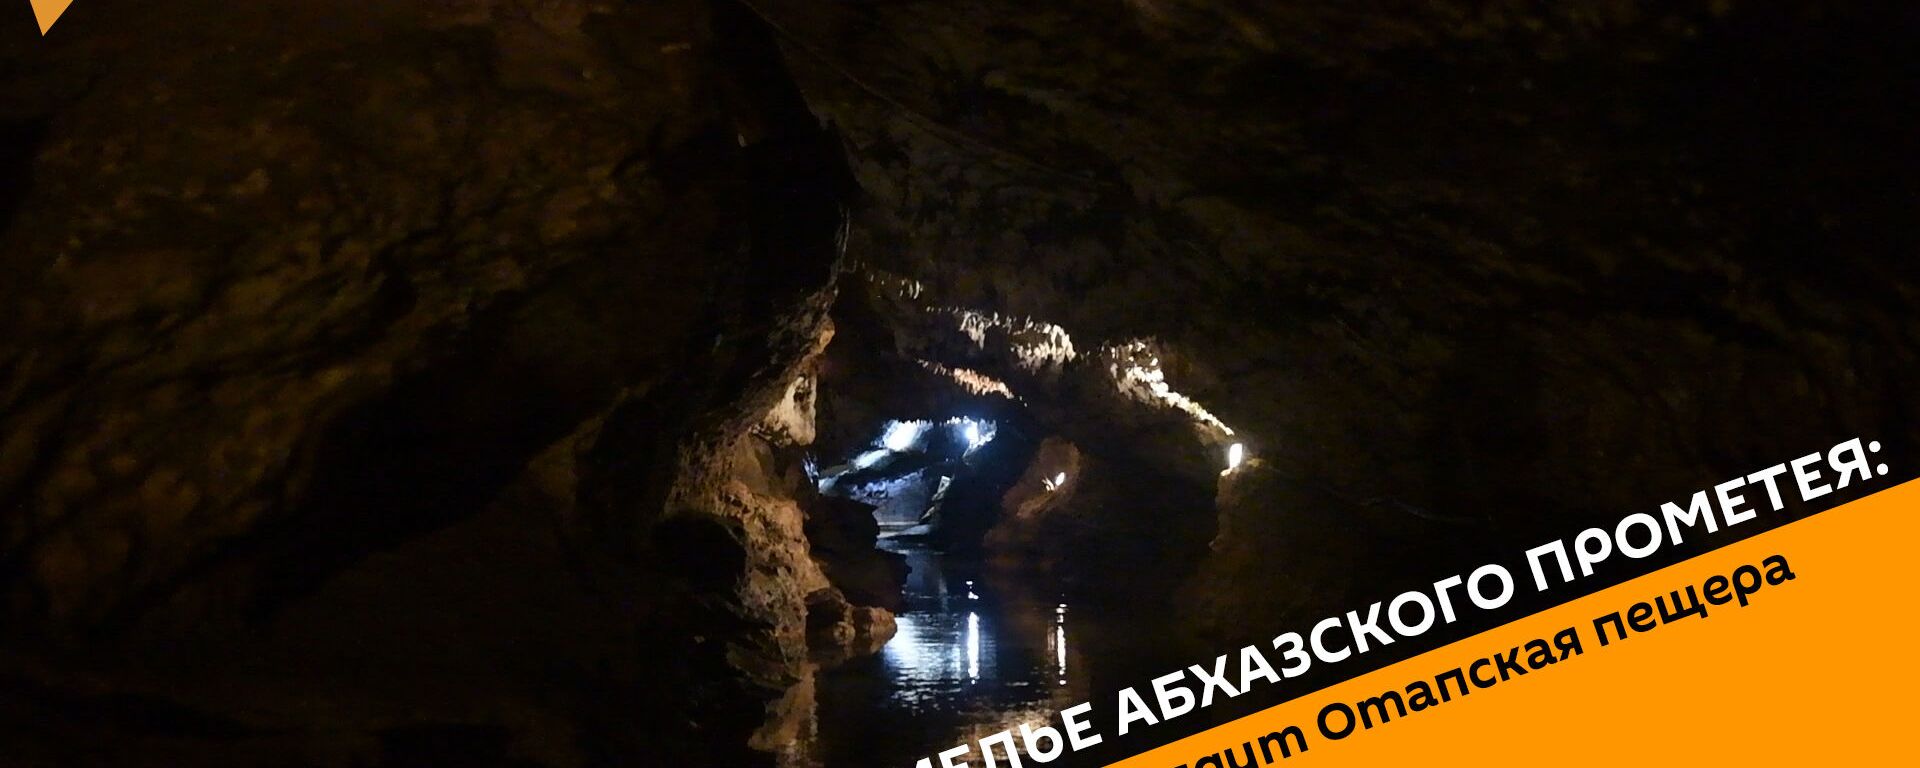 Подземелье абхазского Прометея: как выглядит Отапская пещера - Sputnik Абхазия, 1920, 14.08.2019